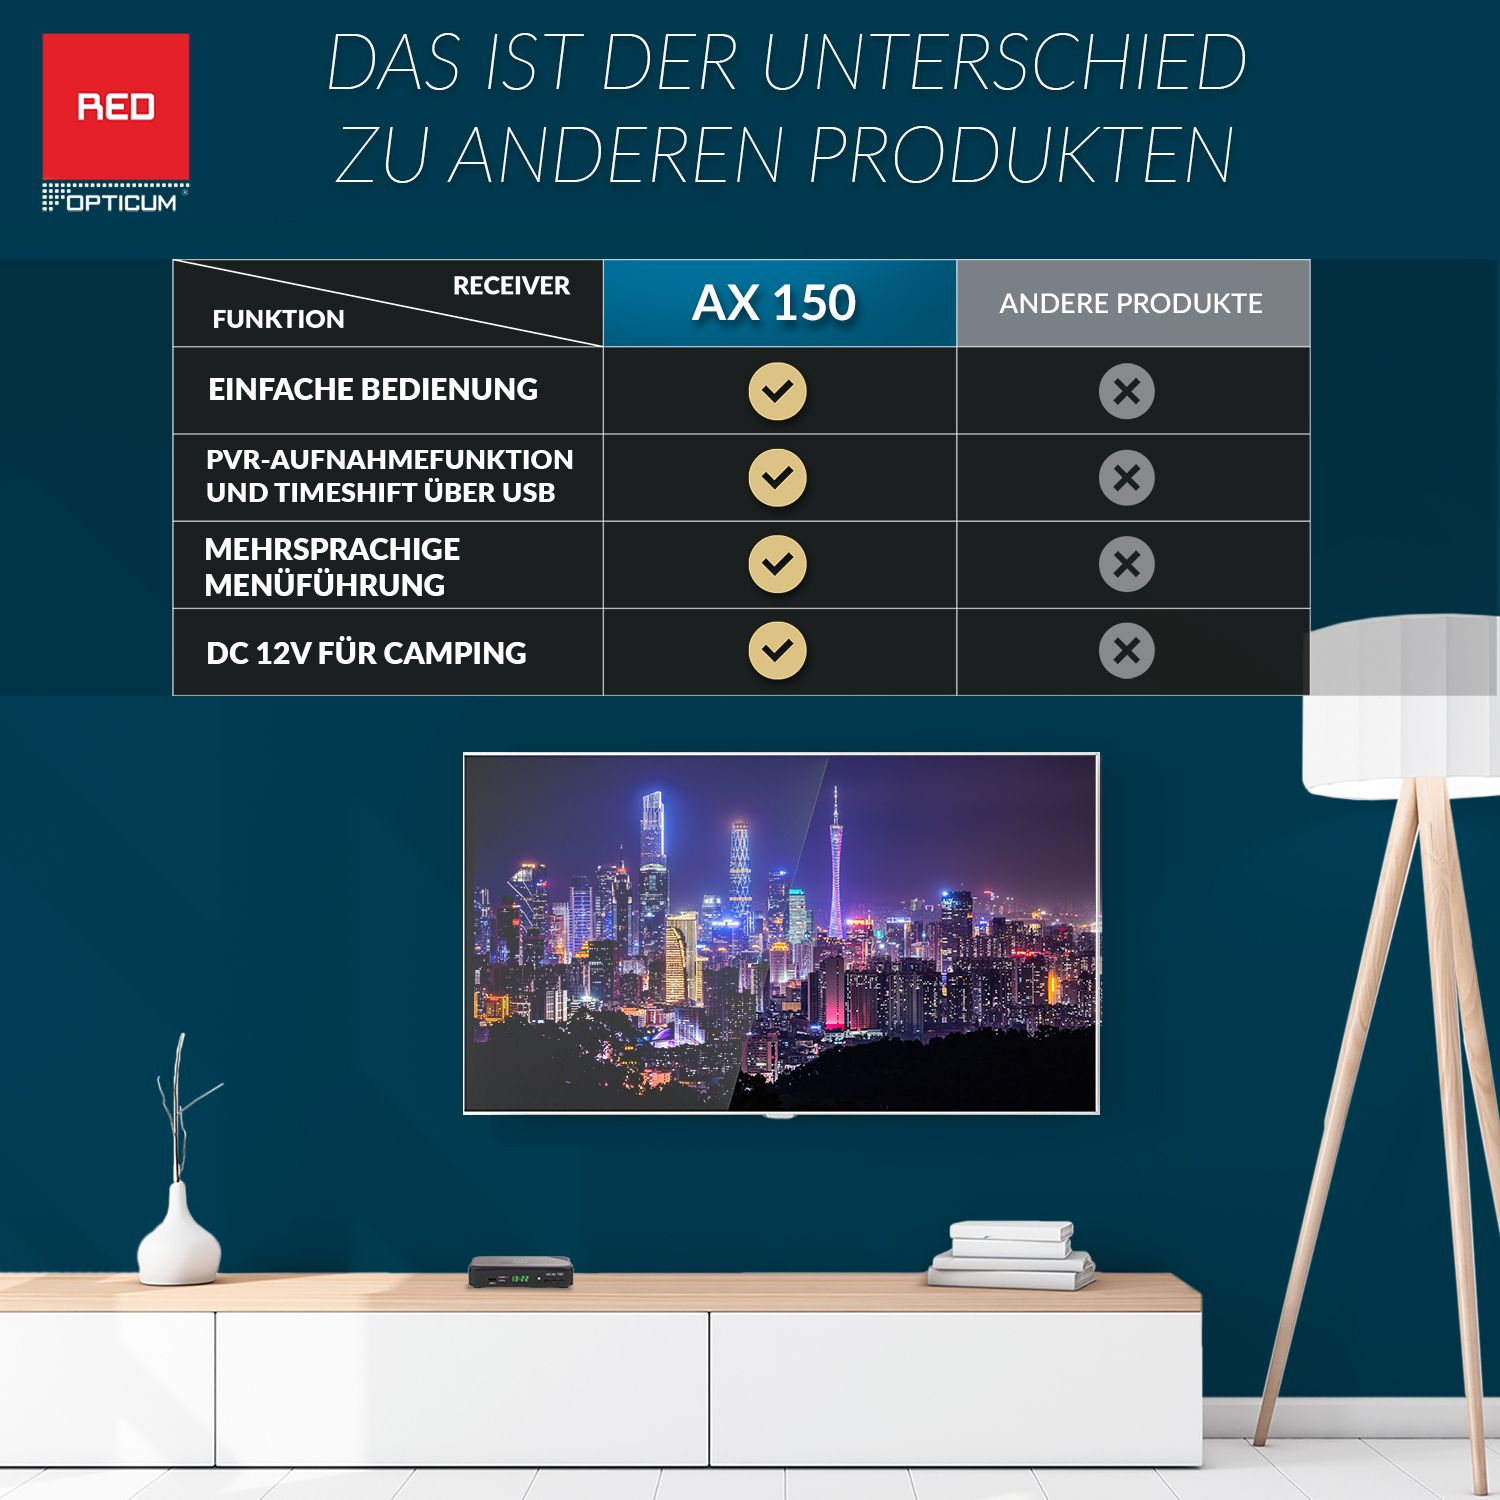 RED OPTICUM Sat-Receiver (HDTV, PVR-Funktion, PVR schwarz) AX 150 mit DVB-S2, Opticum DVB-S